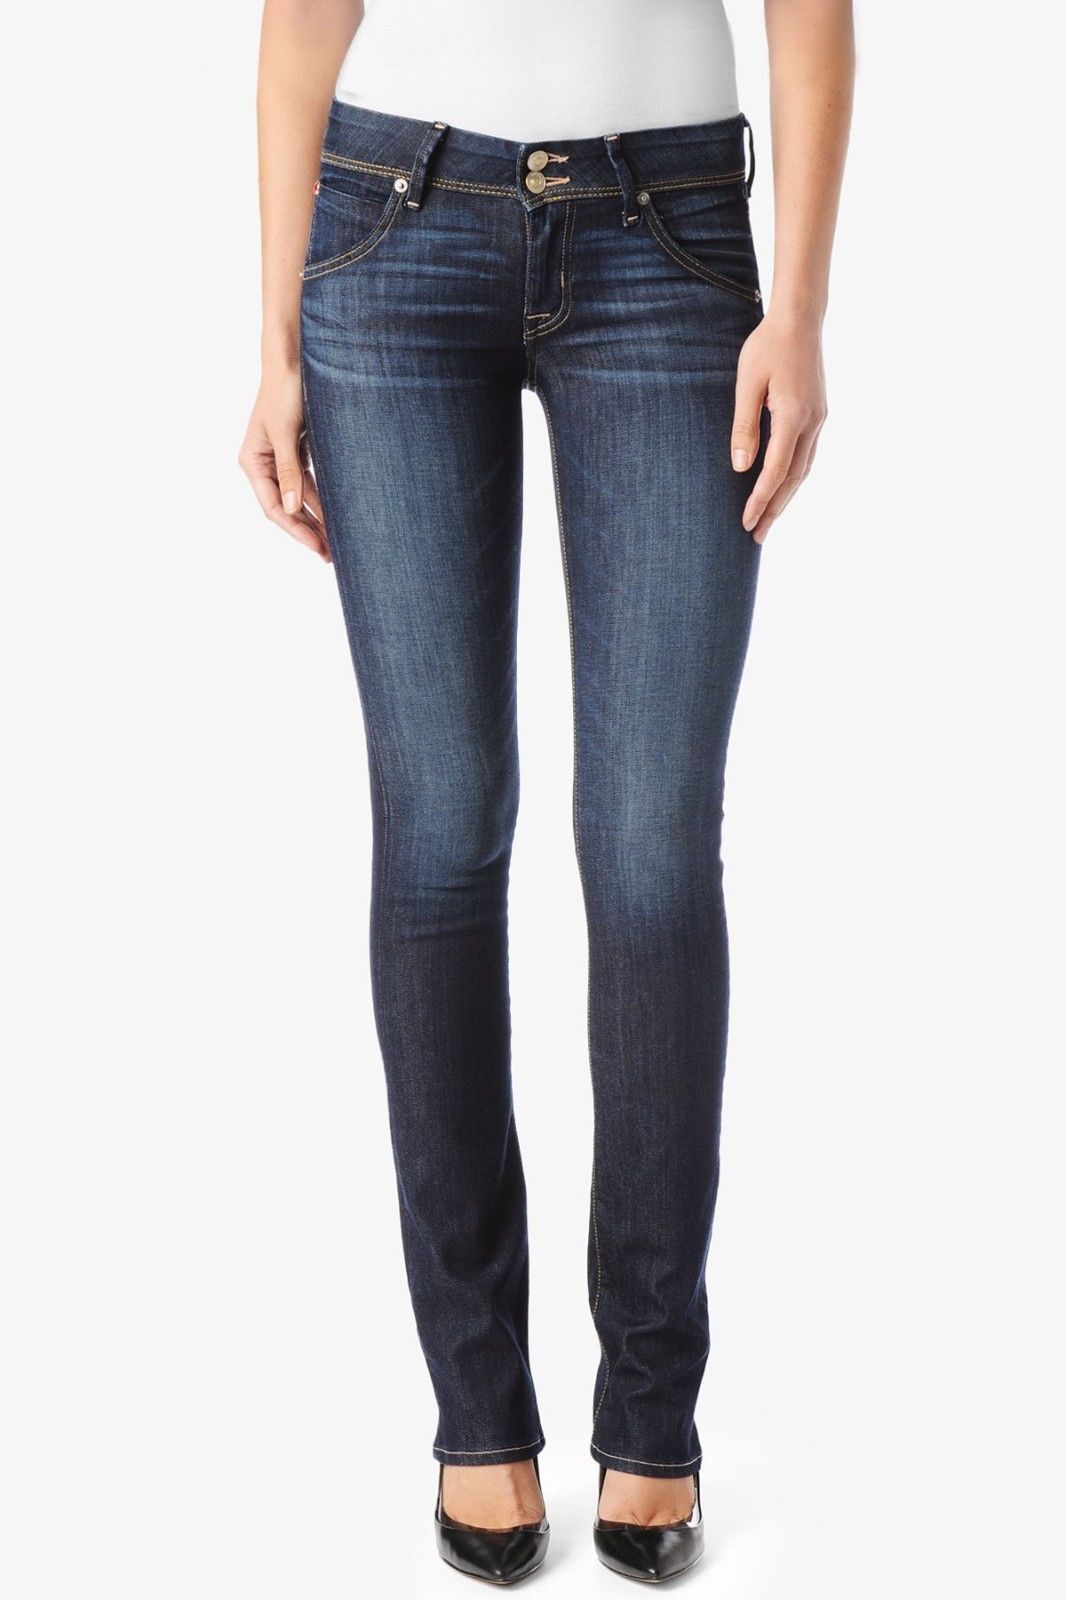 Top 10 Designer Jeans for Women | eBay